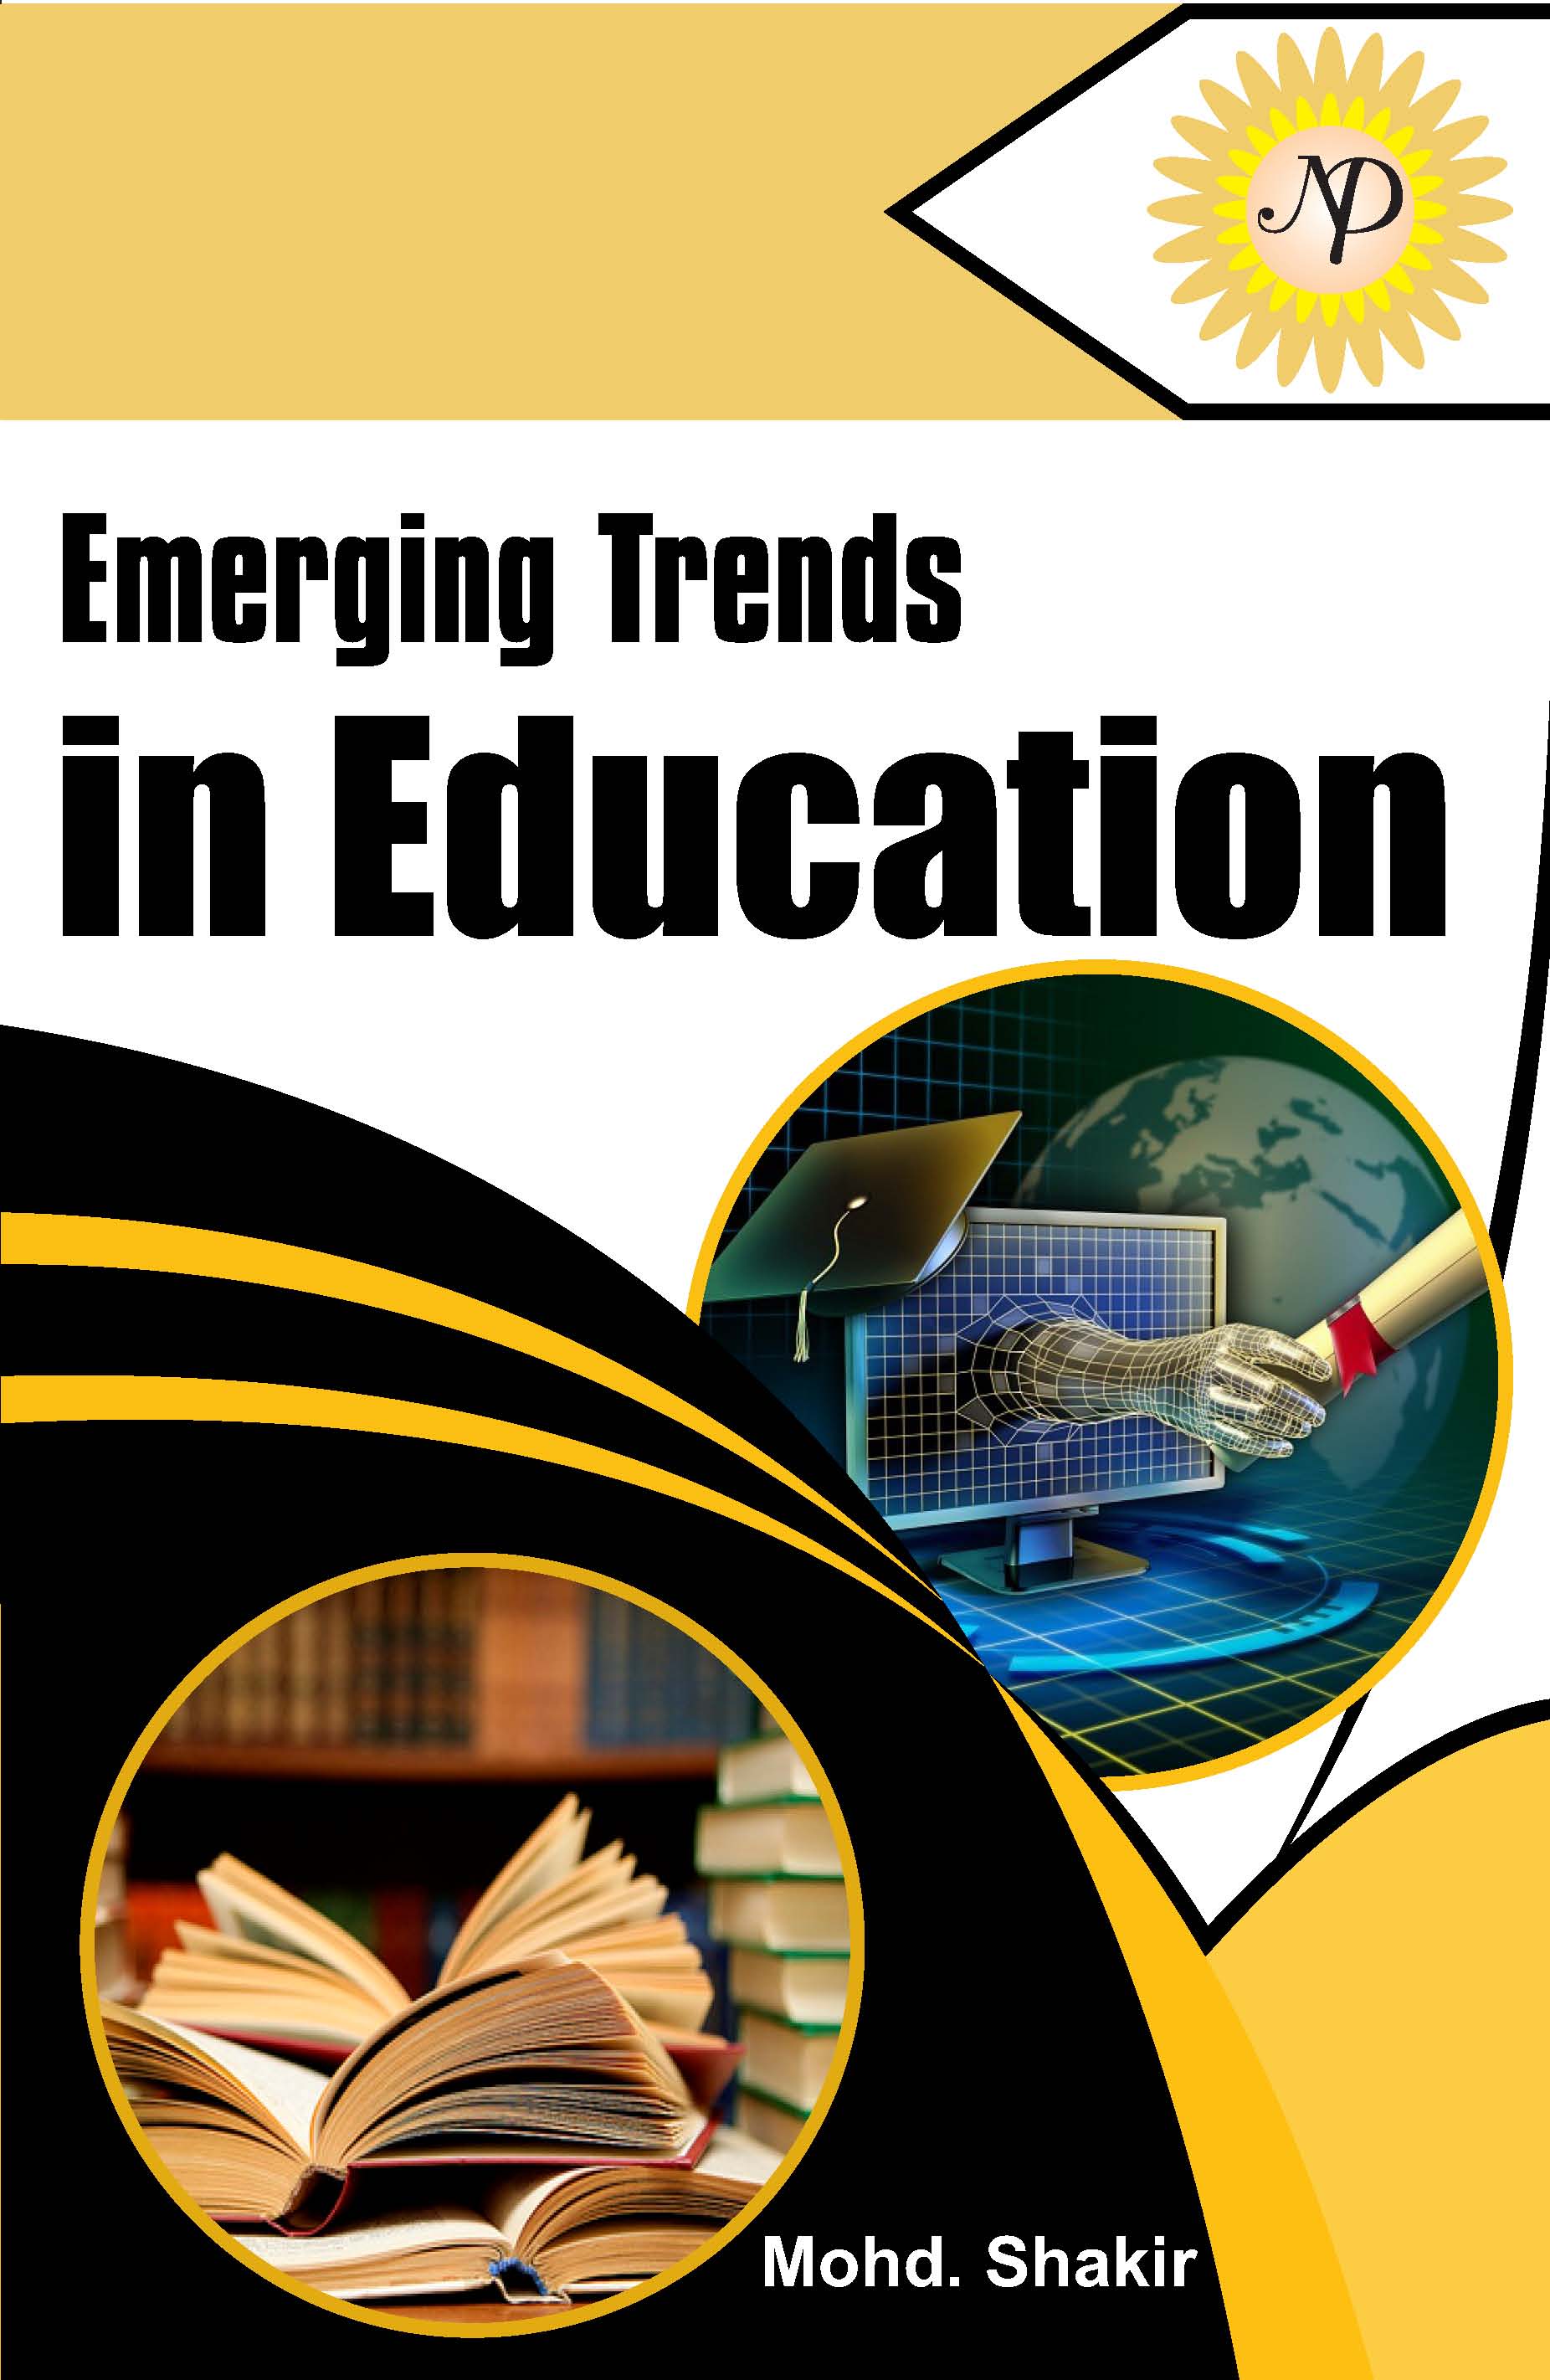 Emerging Trends in Education.jpg